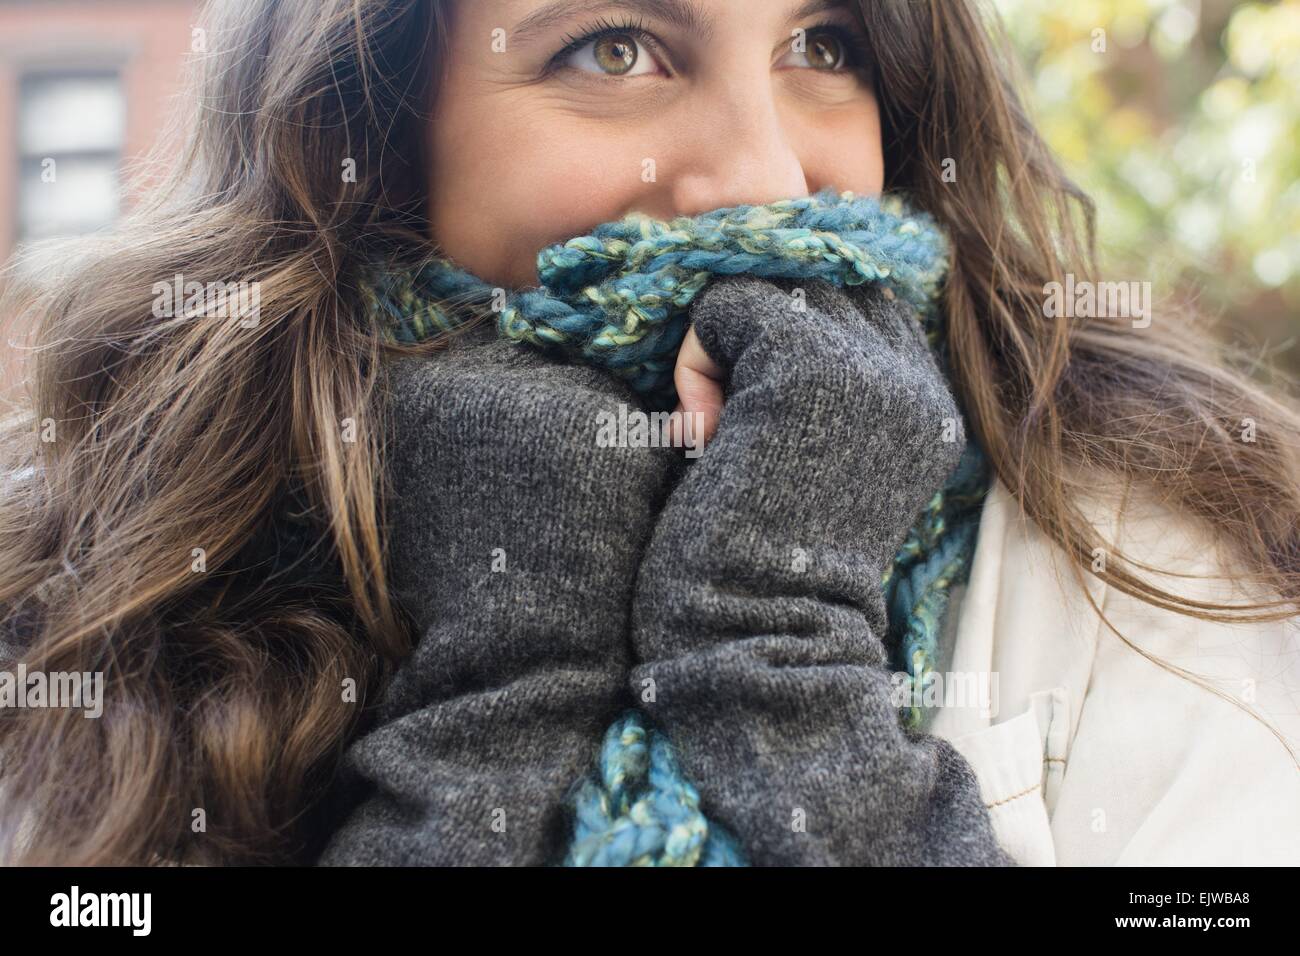 Stati Uniti d'America, nello Stato di New York, New York, Brooklyn, giovane donna nasconde il suo volto dietro la sciarpa Foto Stock